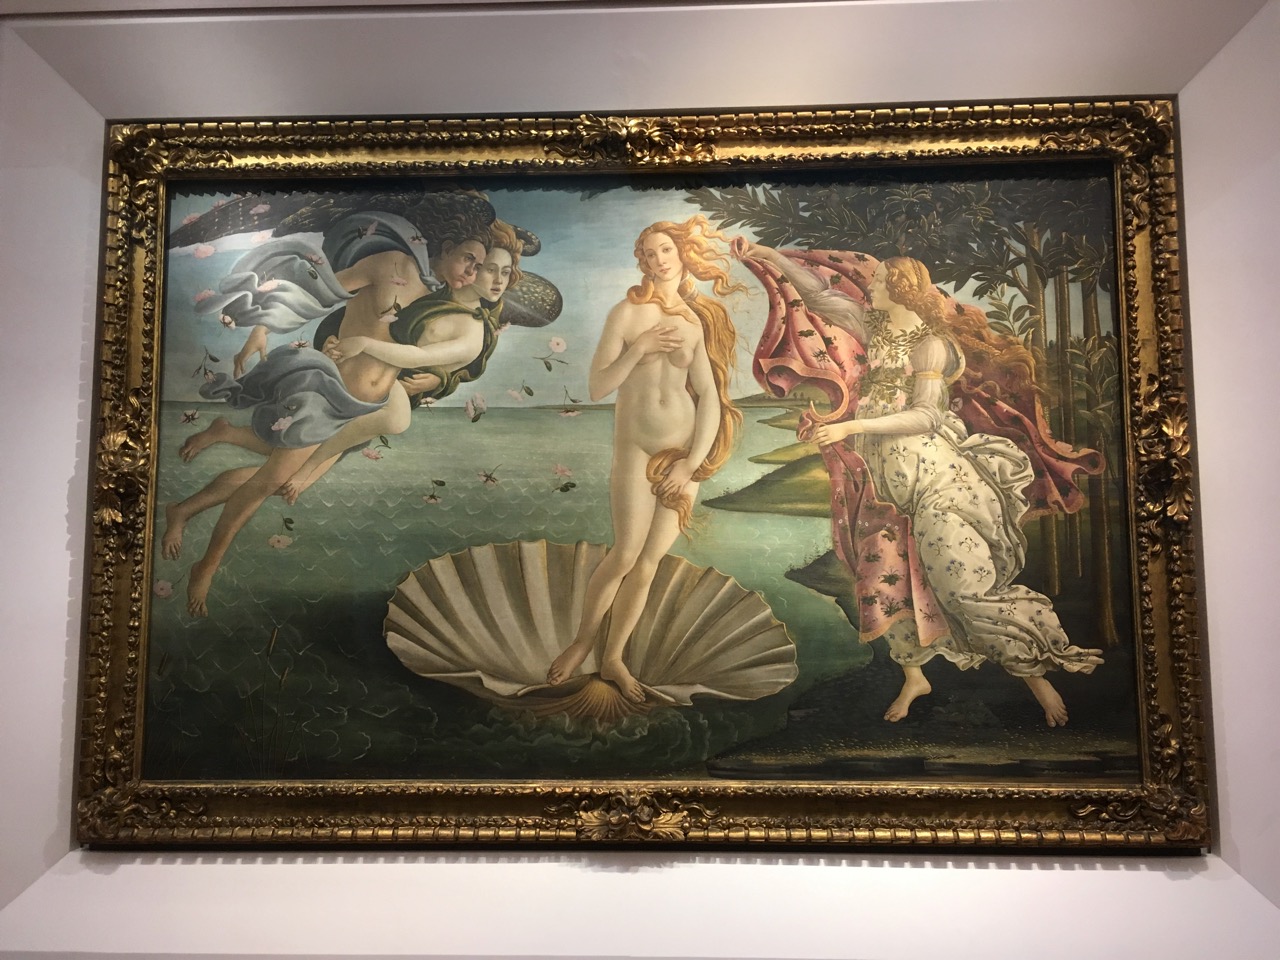 桑德罗·波提切利的《维纳斯的诞生》，1484，这幅画描绘了裸体的爱神维纳斯从贝壳中诞生的情景，她的仆人春神芙罗就随侍左右。